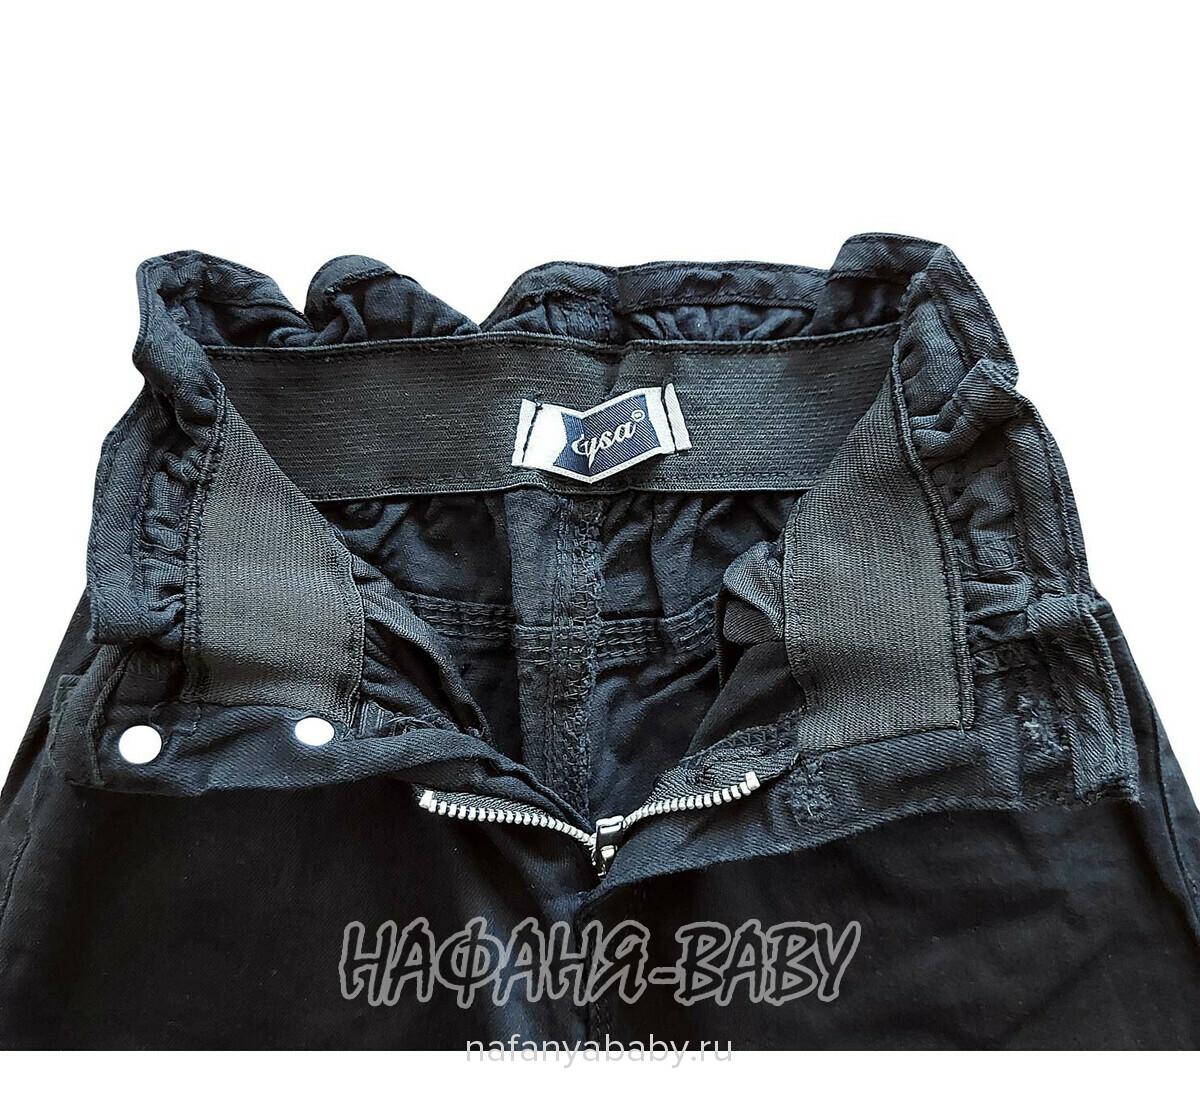 Джинсы подростковые ELEYSA Jeans арт: 6136, 8-12 лет, цвет черный, оптом Турция